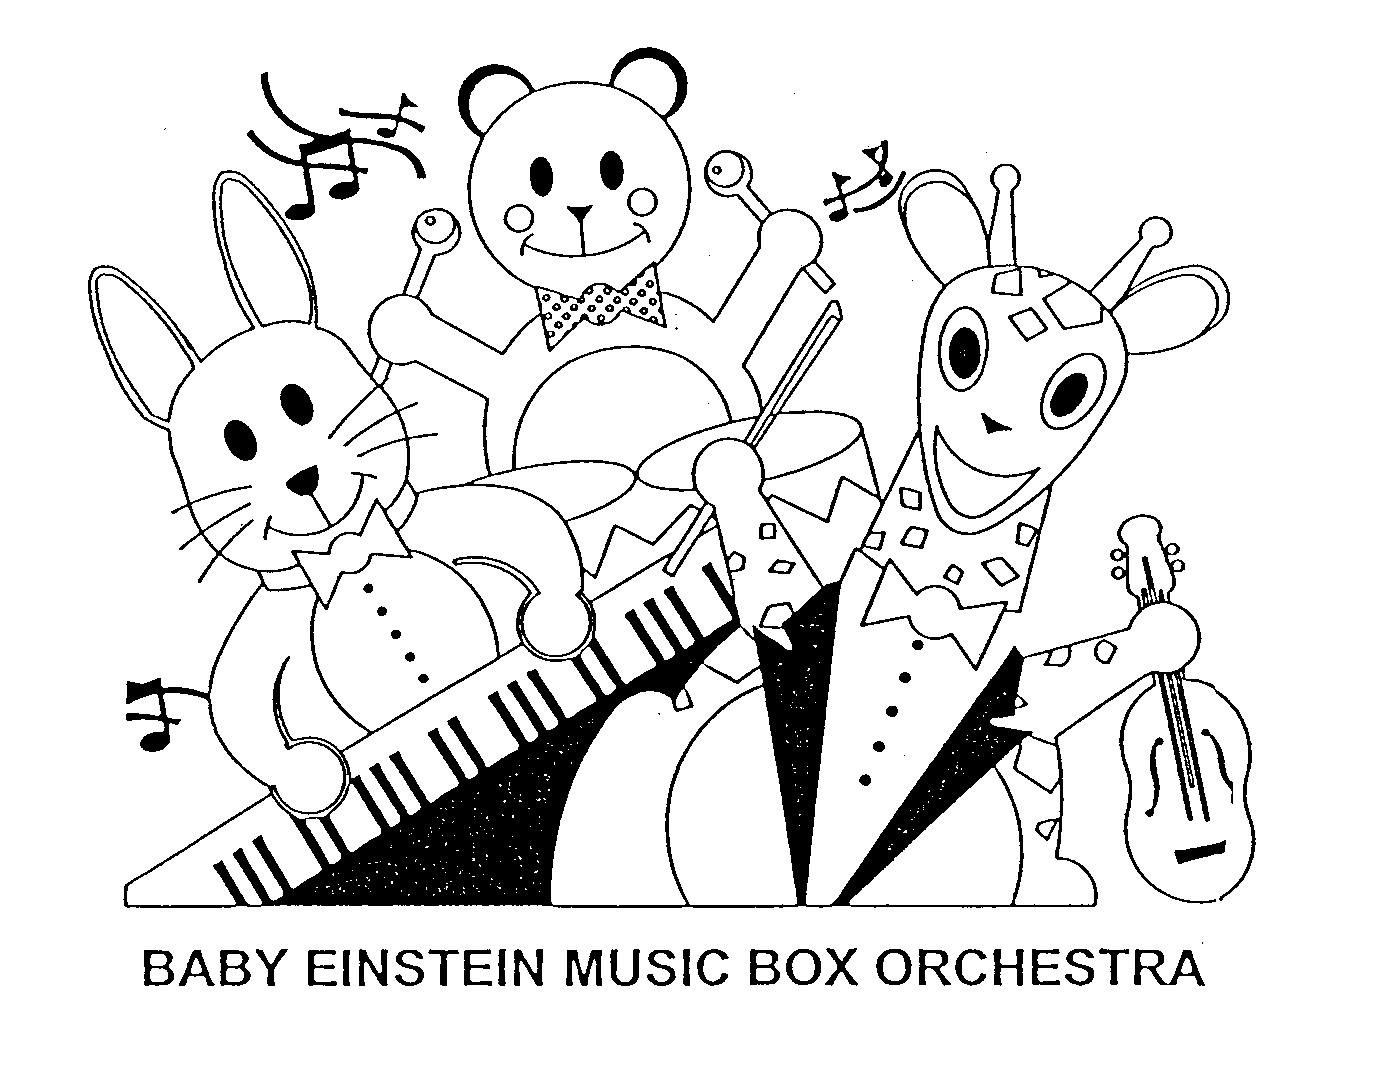  BABY EINSTEIN MUSIC BOX ORCHESTRA